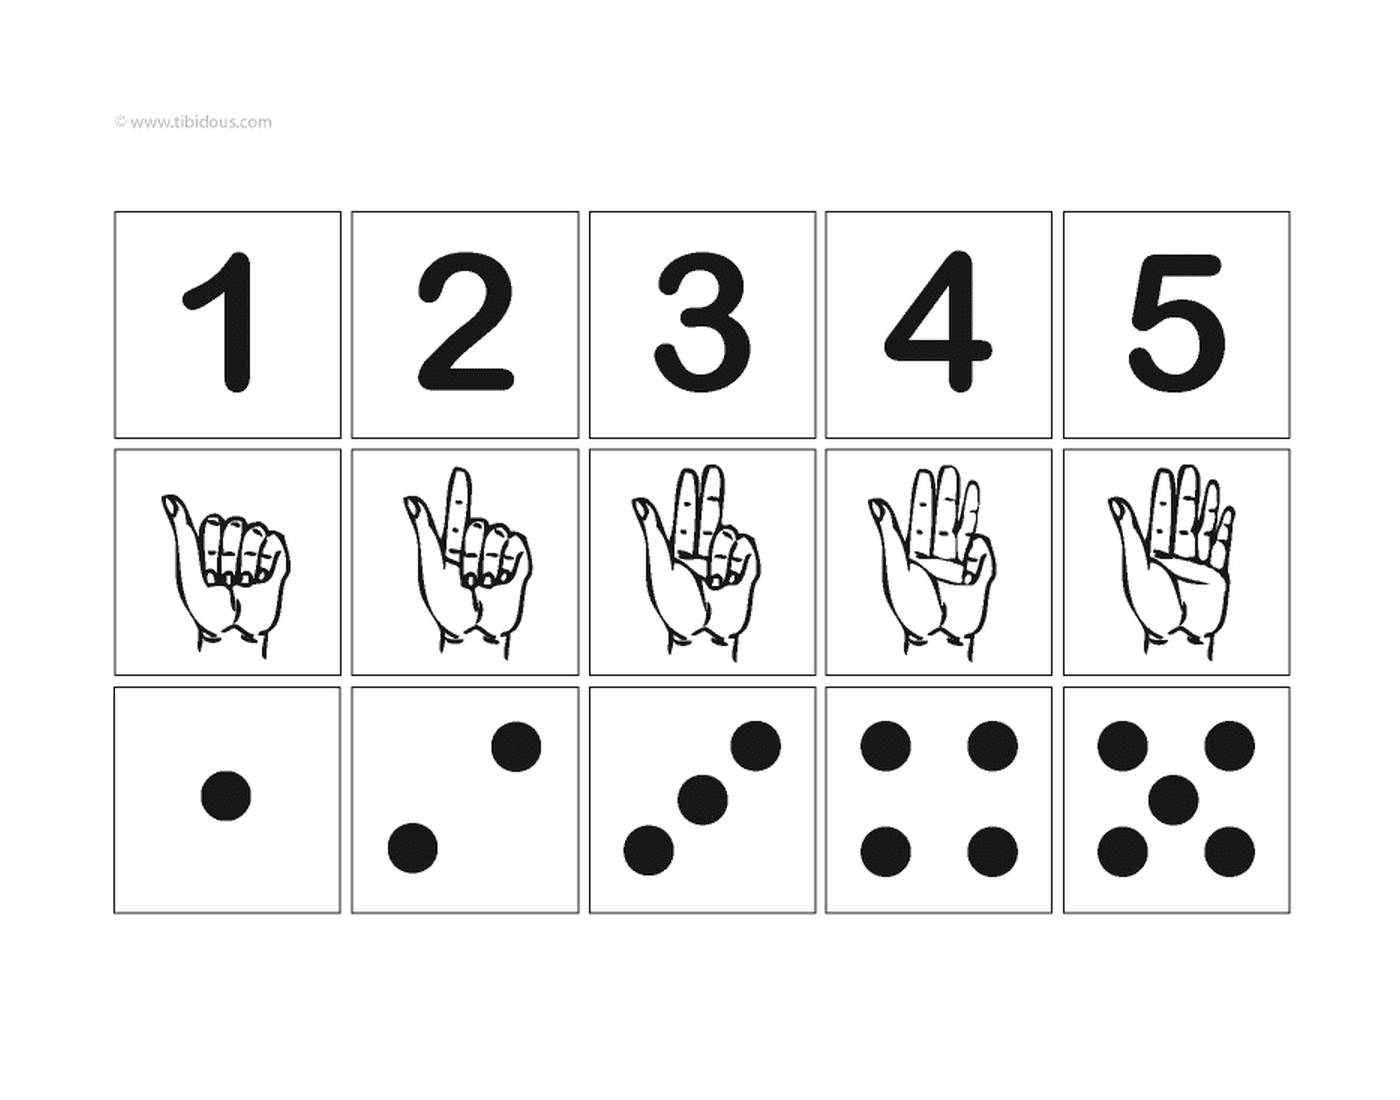  Zahlen von eins bis fünf mit Zeichen und Illustration 